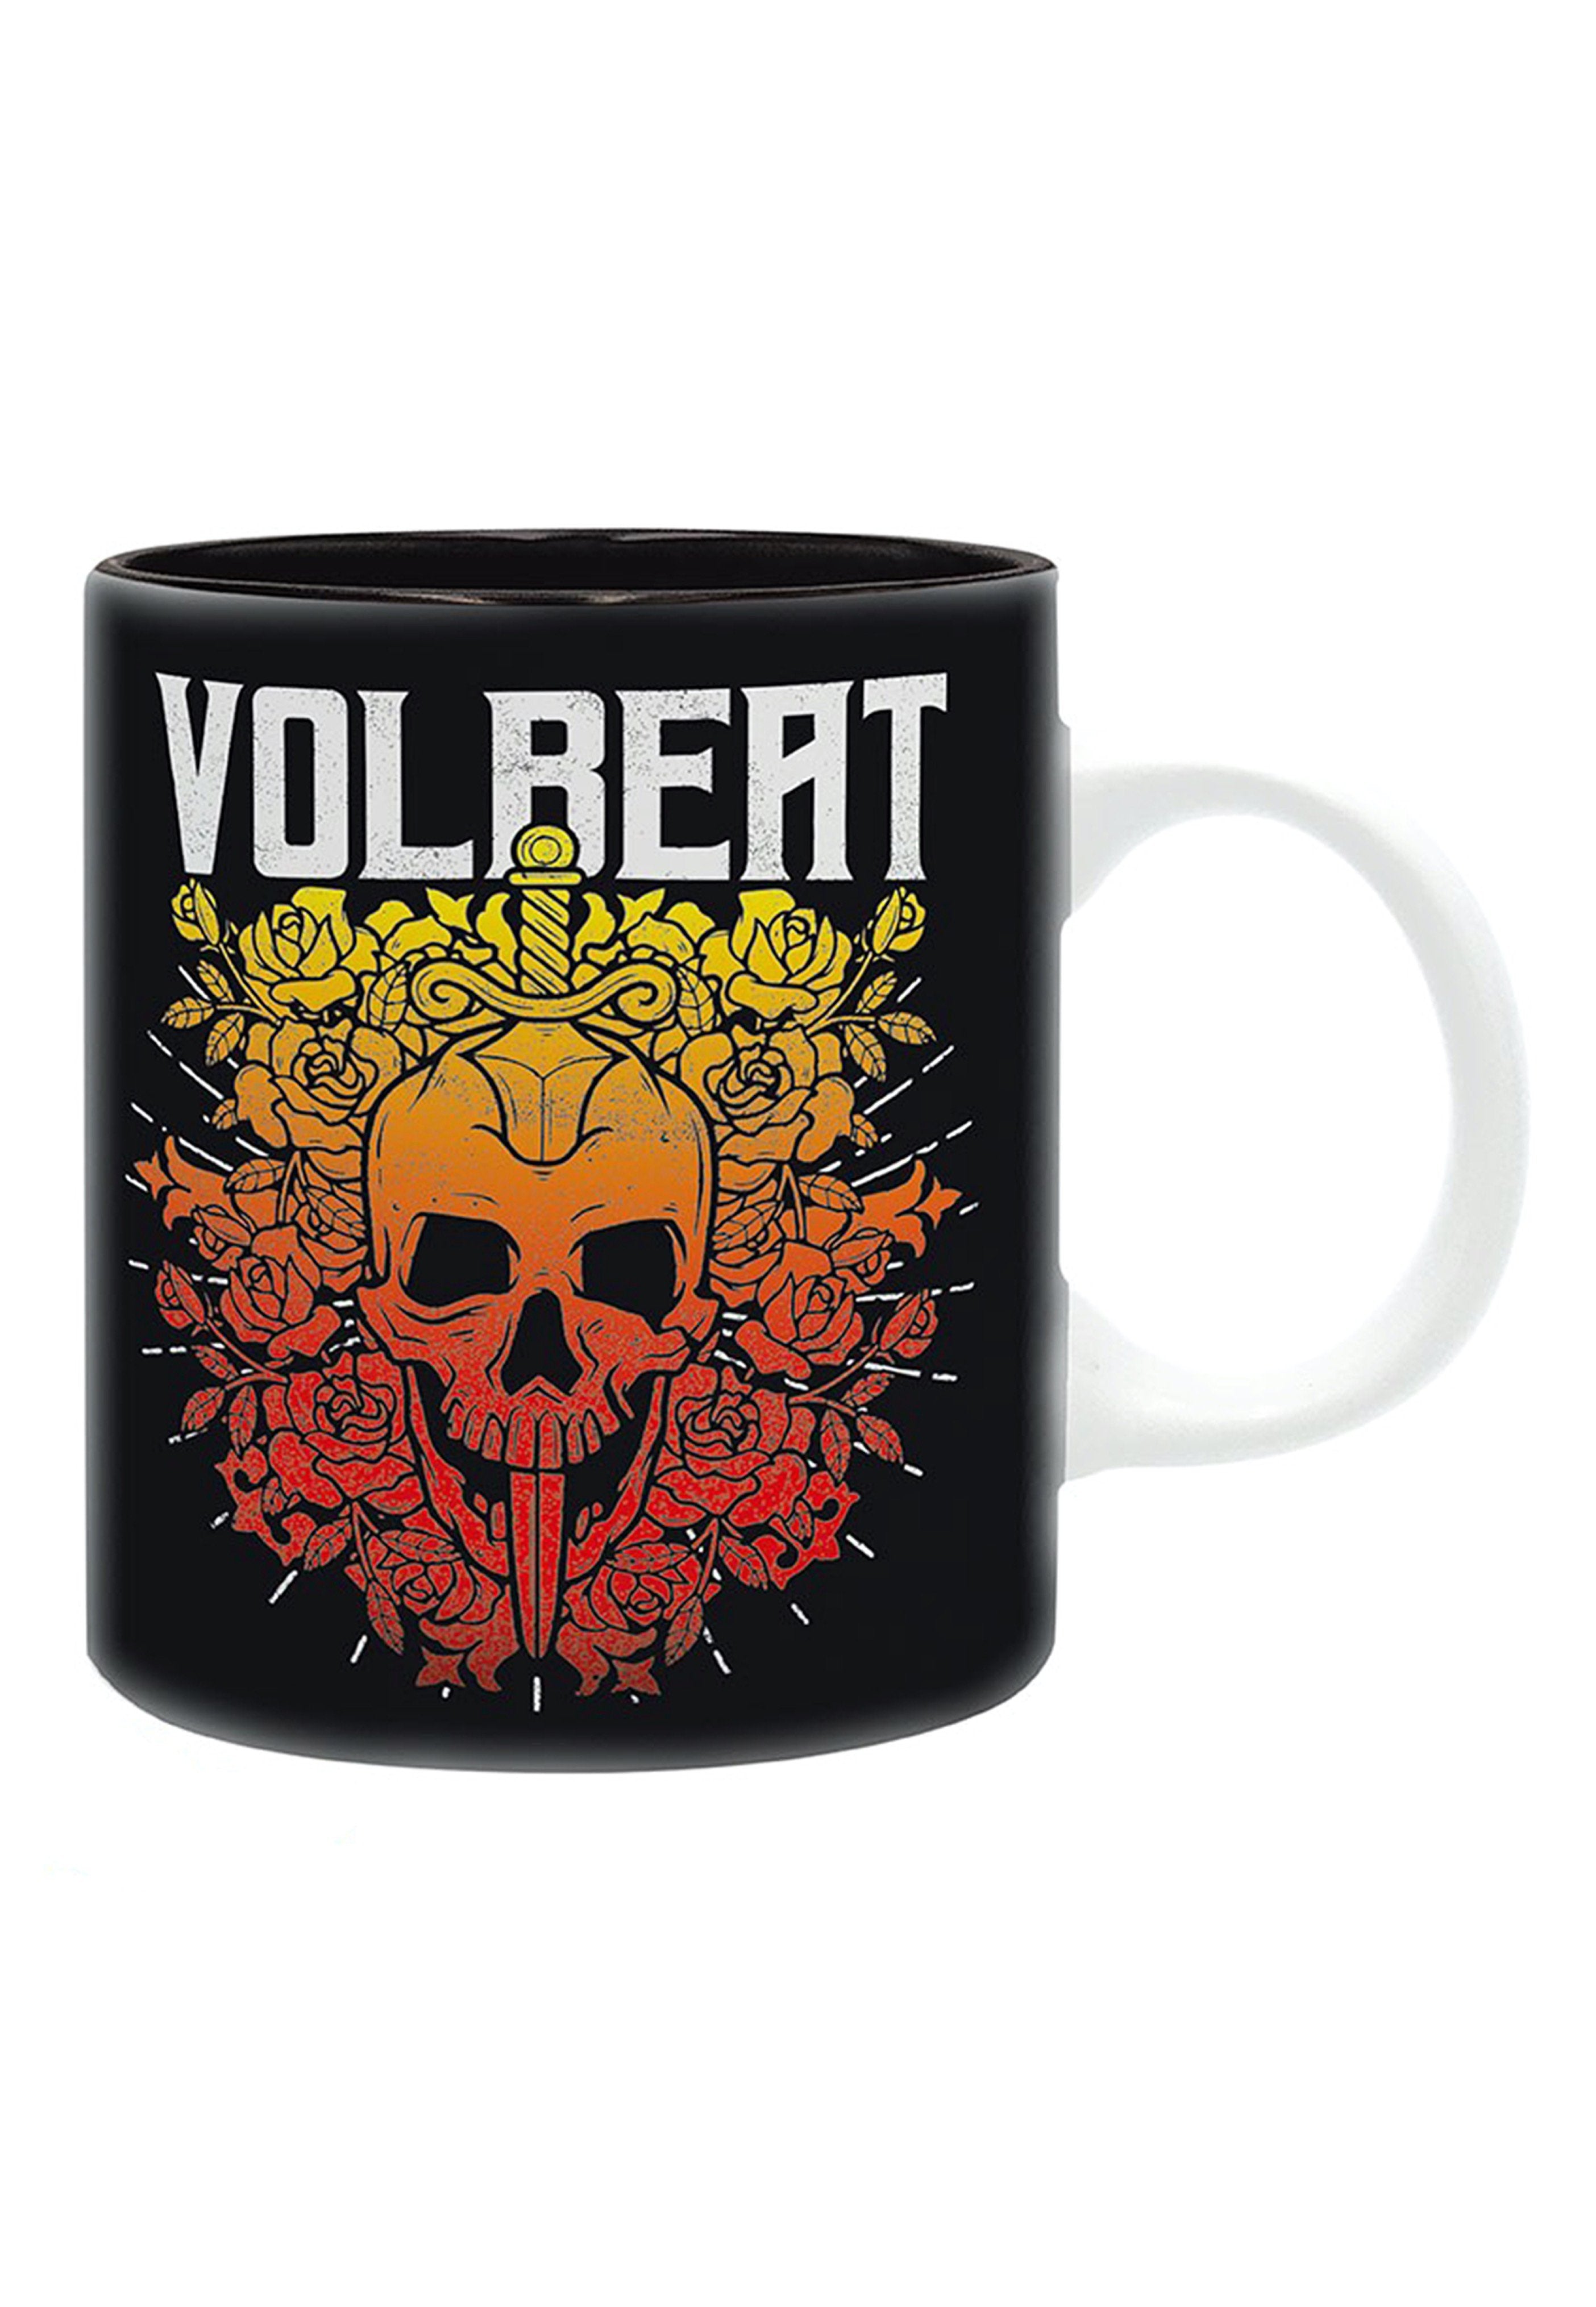 Volbeat - Skull And Roses - Mug